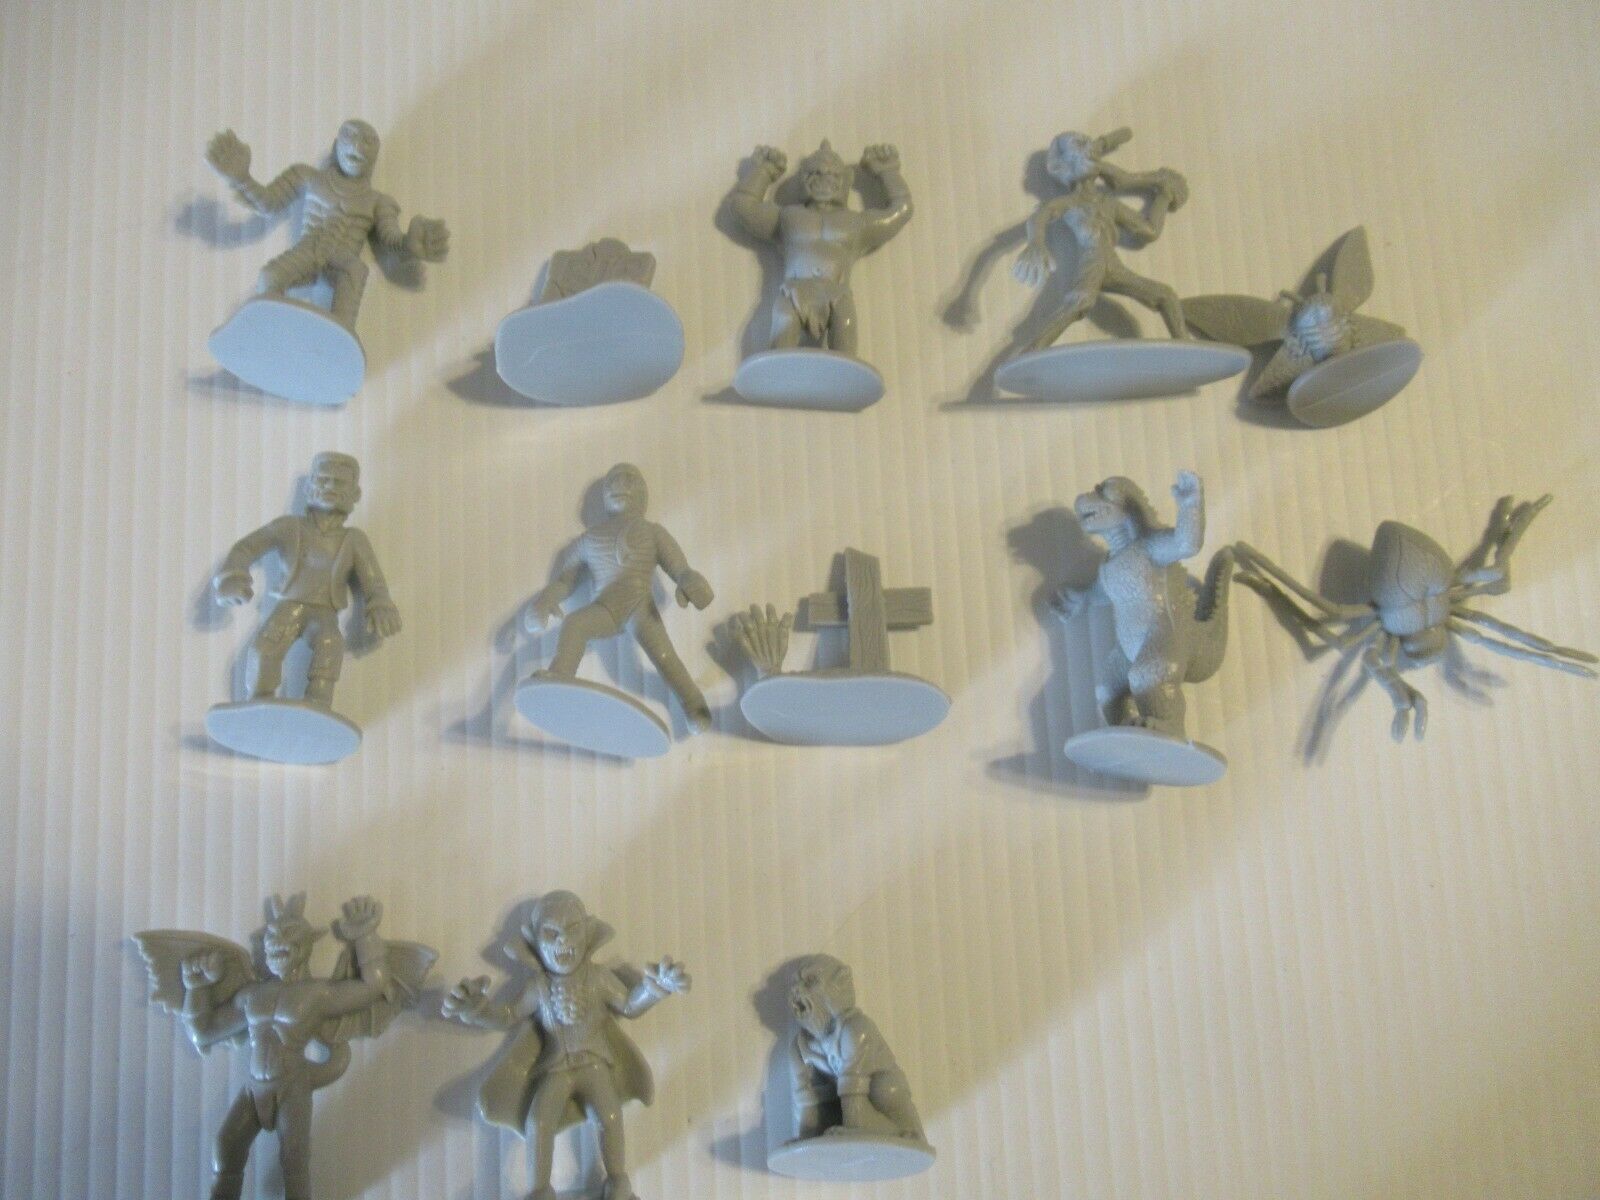 Set Of 13 Big Bucket Of Monsters Figures - Light Grey